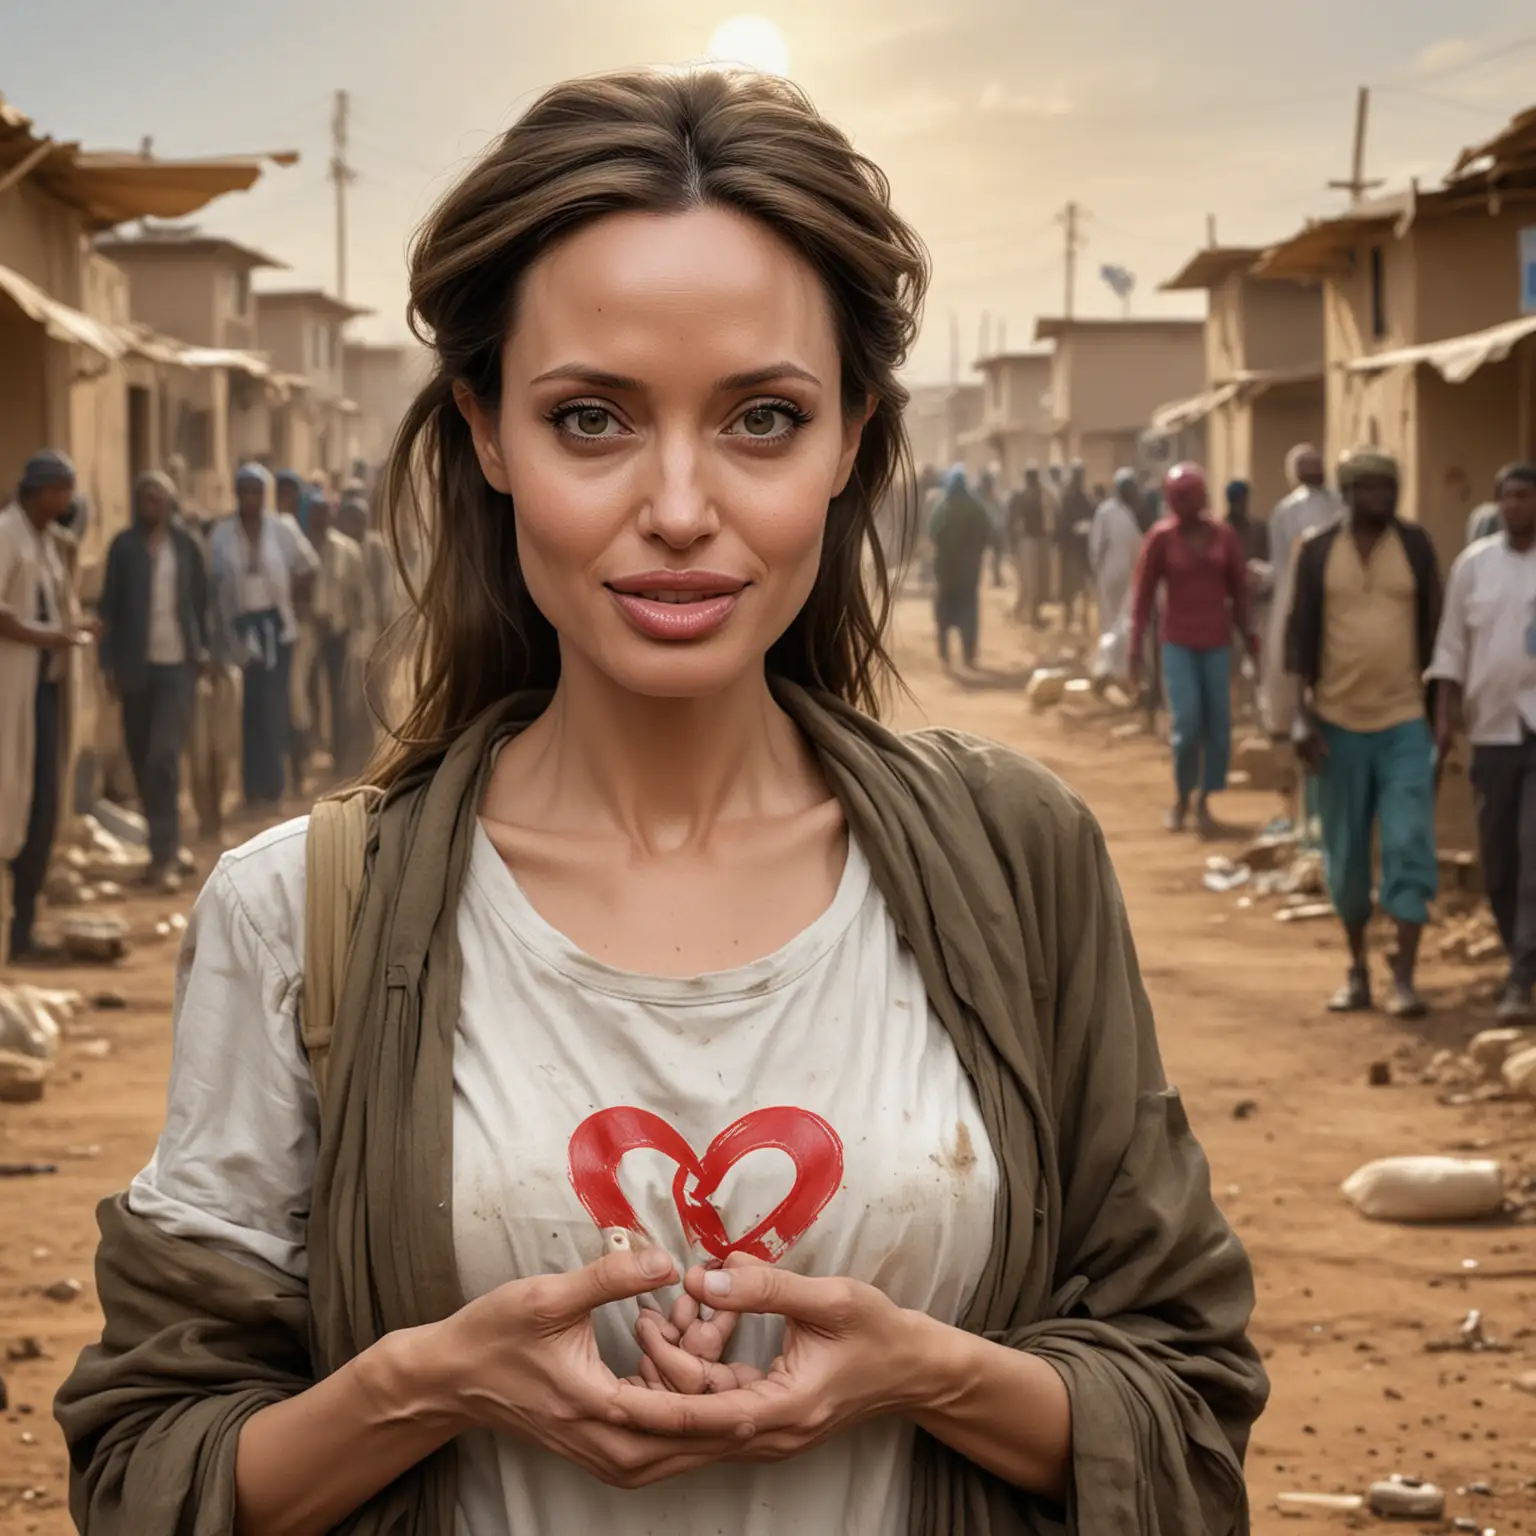 karikatur Angelina Jolie als "Humanitäre Ikone": Zeichne sie mit einem Herzsymbol, das sie in den Händen hält, während sie in einer Szene mit humanitären Hintergrund wie einem Flüchtlingslager oder einem Krankenhaus zu sehen ist, wo sie sich engagiert und hilft.